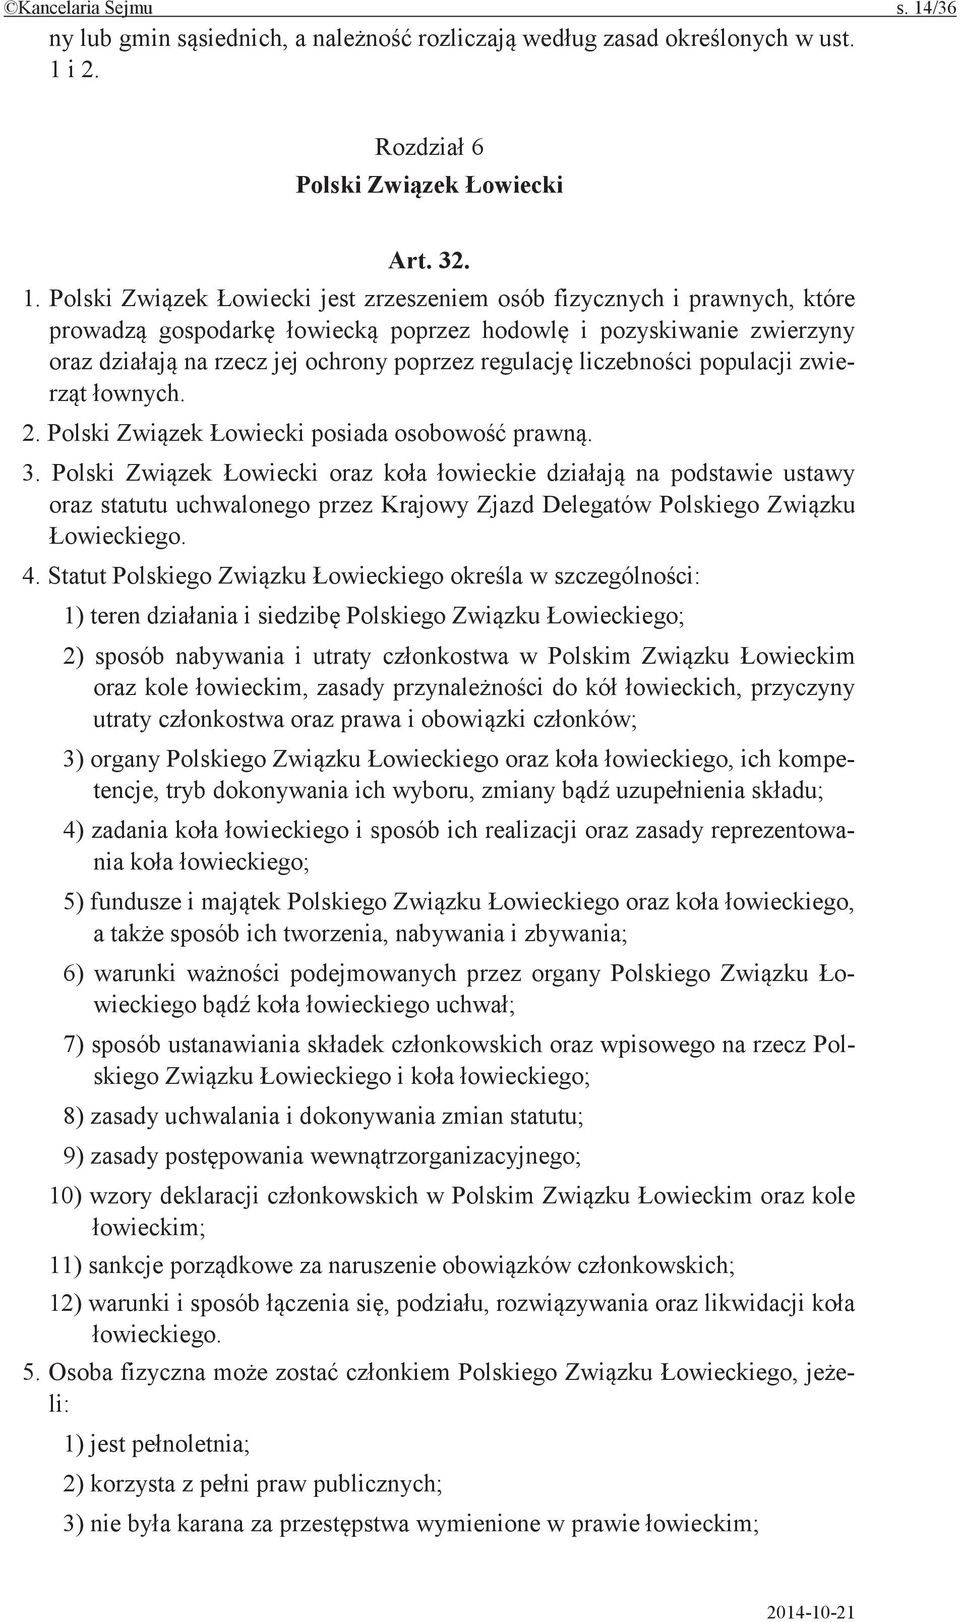 Statut Polskiego w 1) teren i Polskiego 2) sposób nabywania i utraty w Polskim oraz kole zasady do przyczyny utraty oraz prawa i 3) organy Polskiego oraz ich kompetencje, tryb dokonywania ich wyboru,